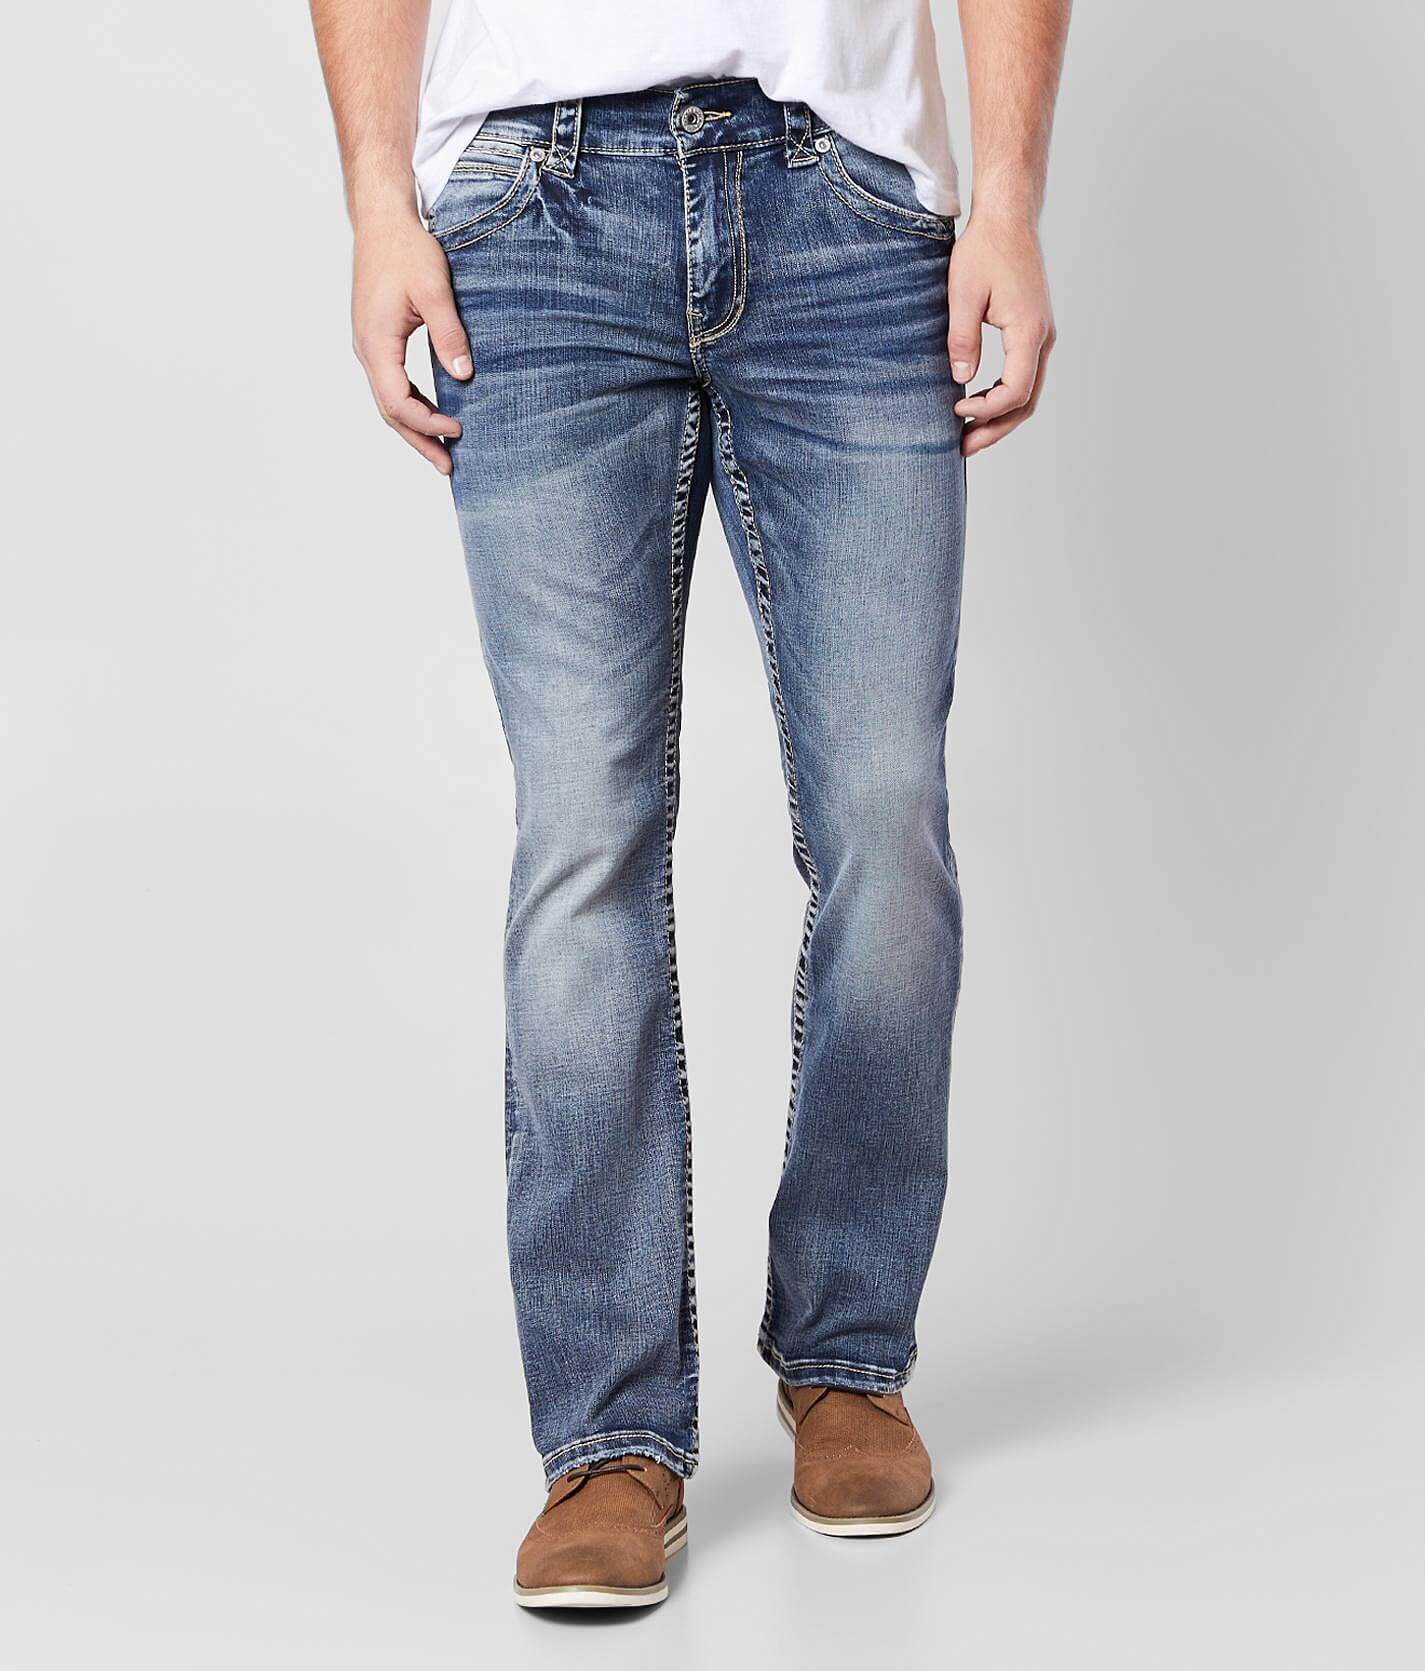 buckle slim bootcut jeans